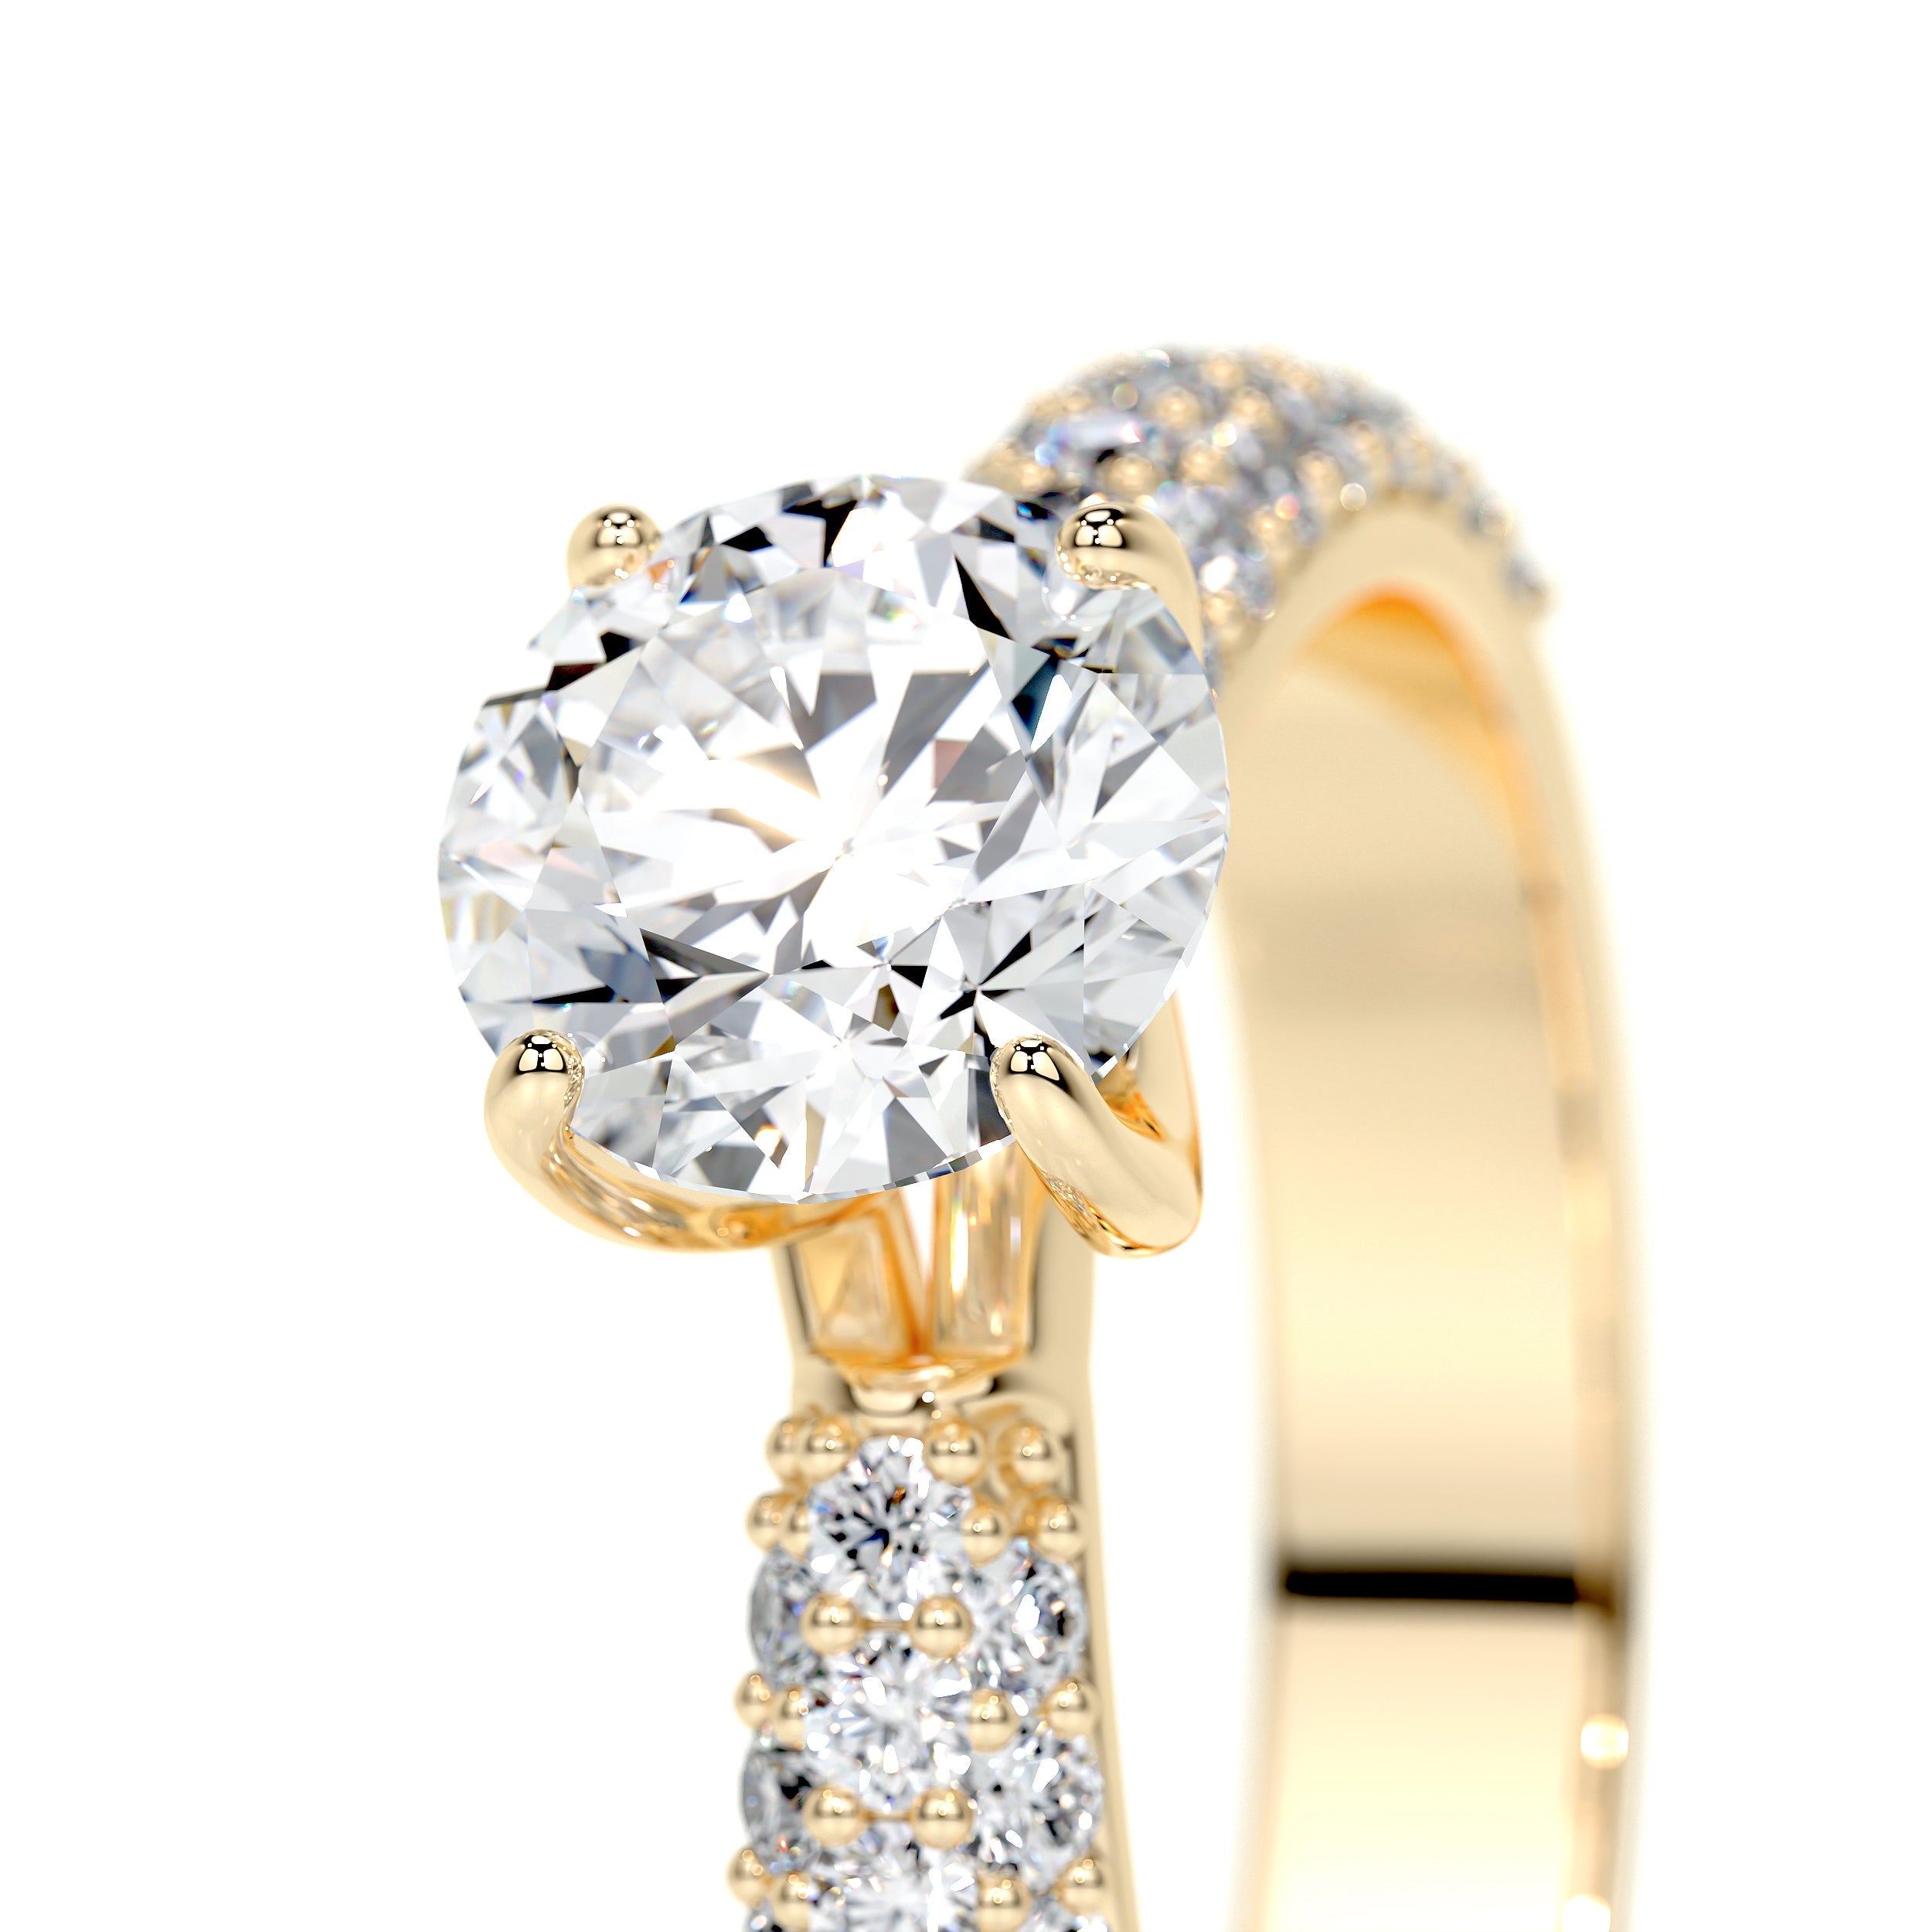 Alora Lab Grown Diamond Ring   (1.5 Carat) -18K Yellow Gold